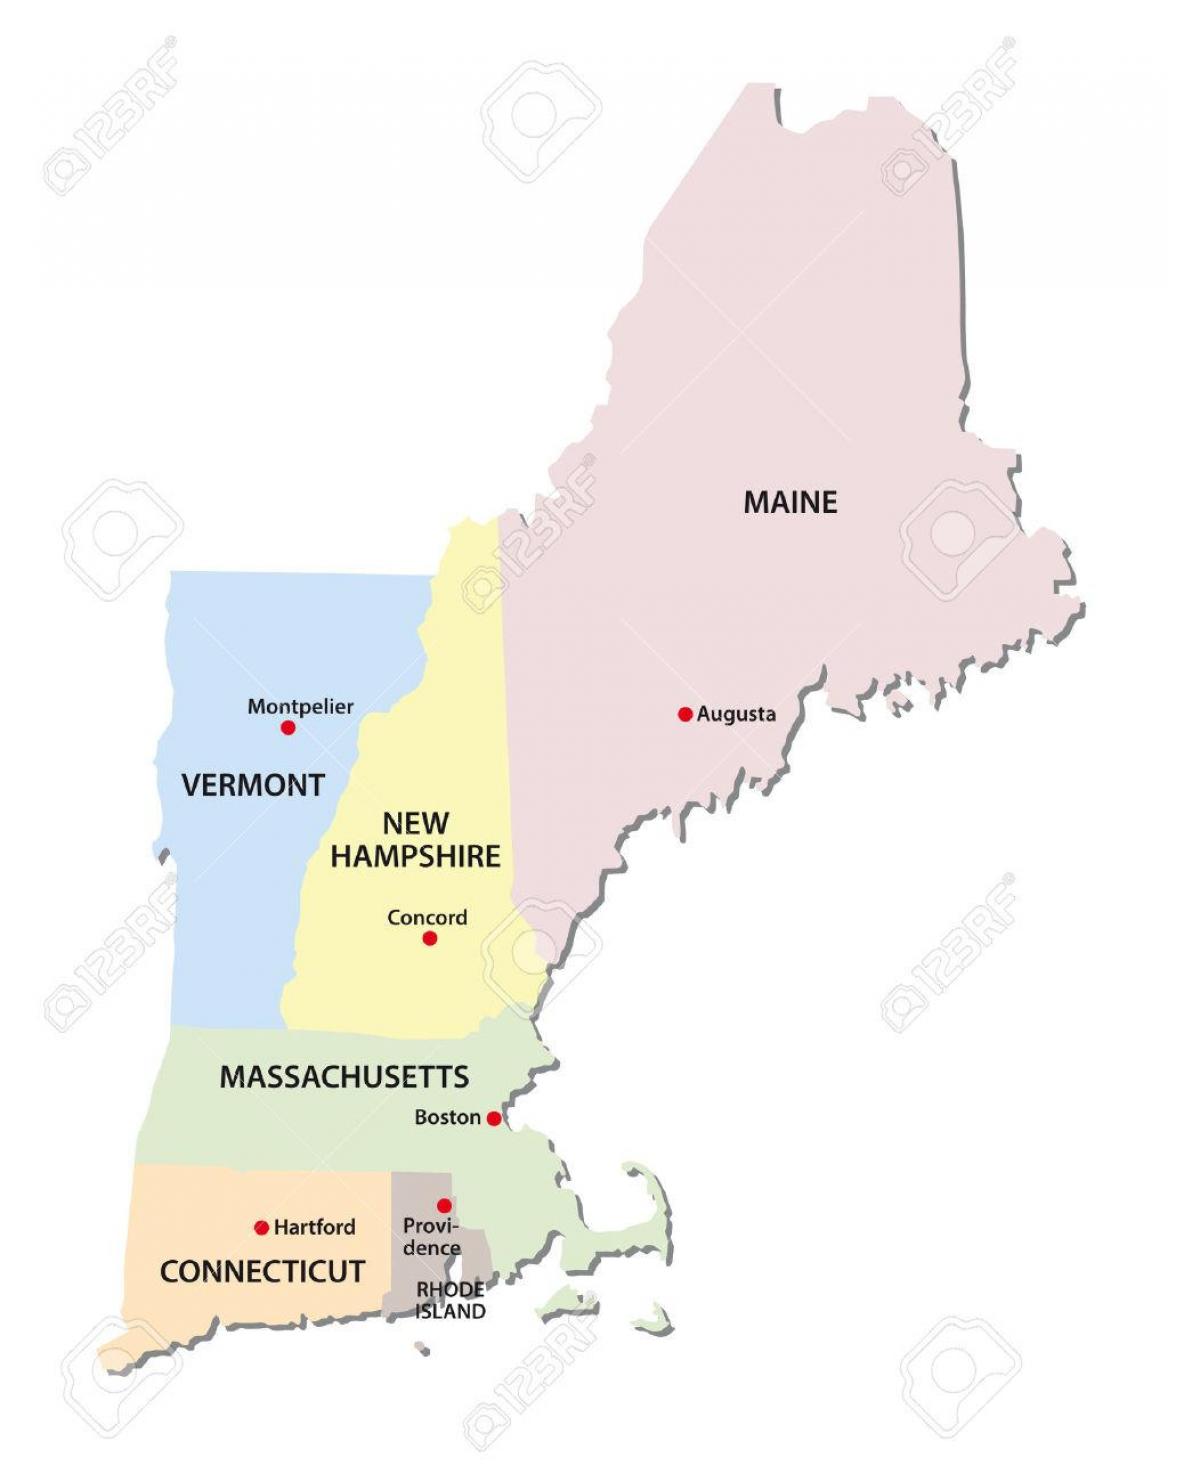 מפה של ניו אינגלנד מדינות